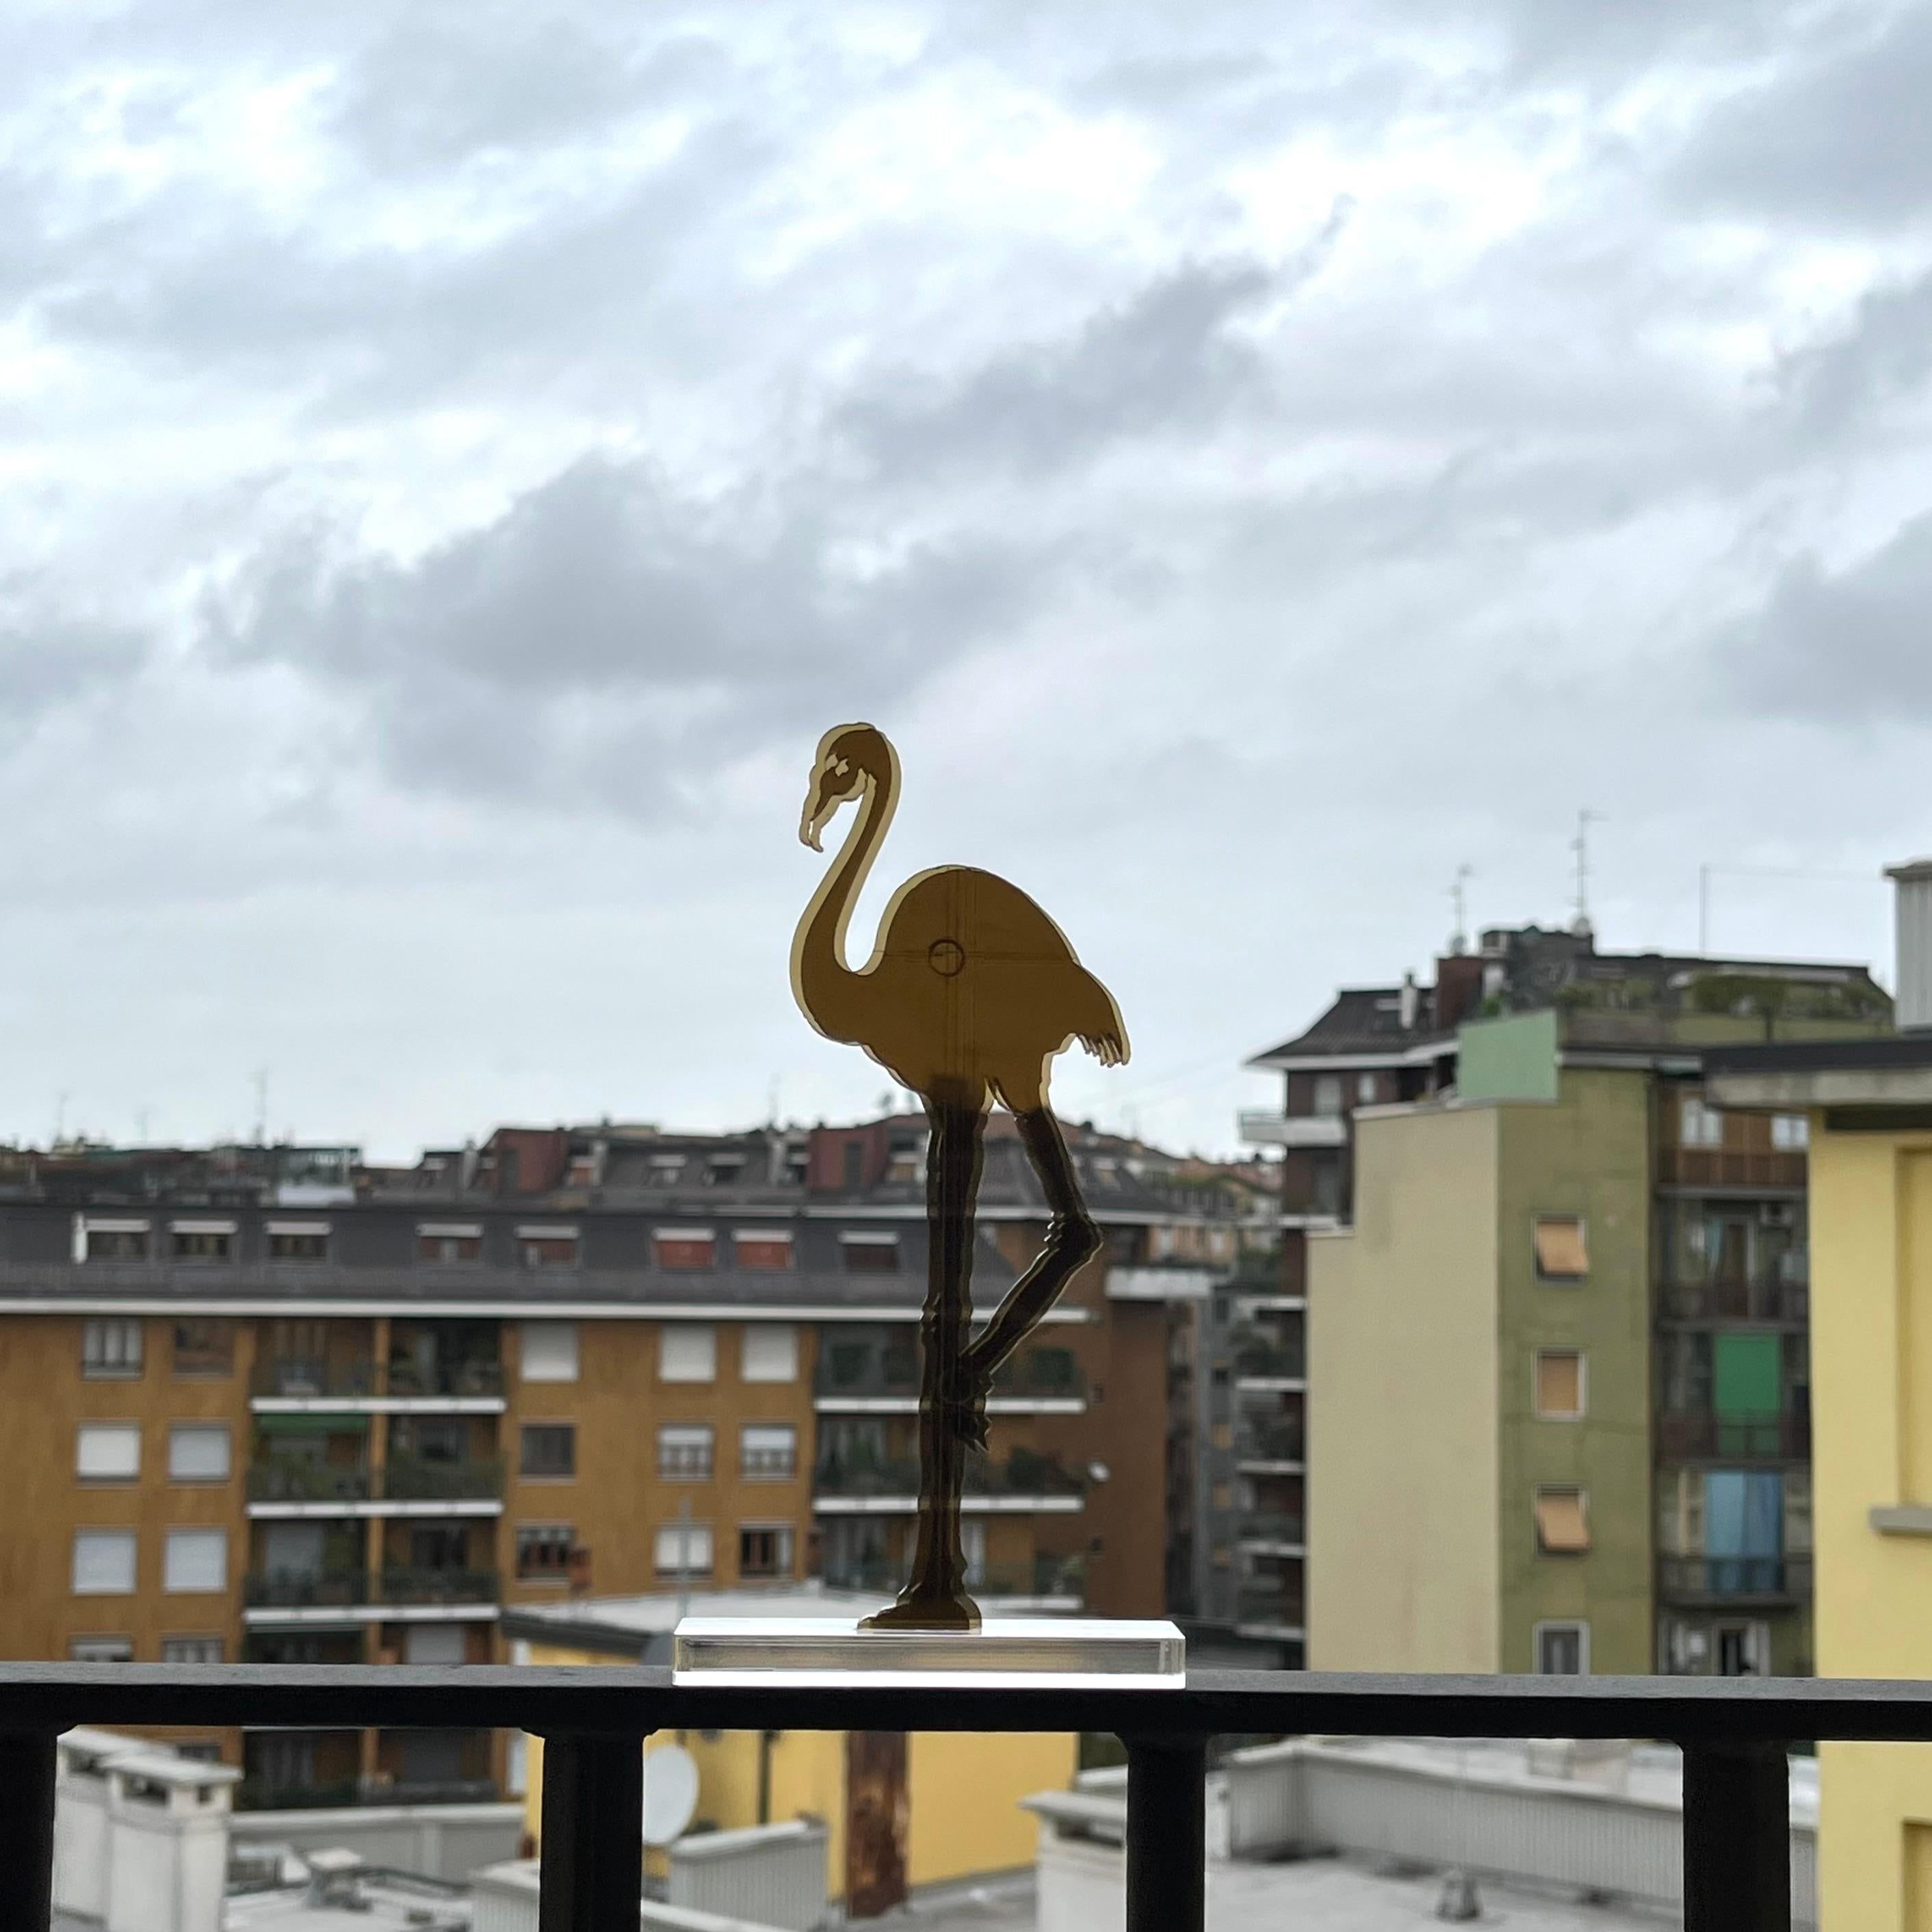 Gino MAROTTA (1935-2012)
Fenicottero artificiale, 2010
Edition Artbeat arrêtée
Sculpture, multiple en méthacrylate coloré bronze et découpé. Signé sur la base.  
Haut. : 19 cm Long. : 10 cm

Gino MAROTTA (1935-2012)
Fenicottero artificiale,